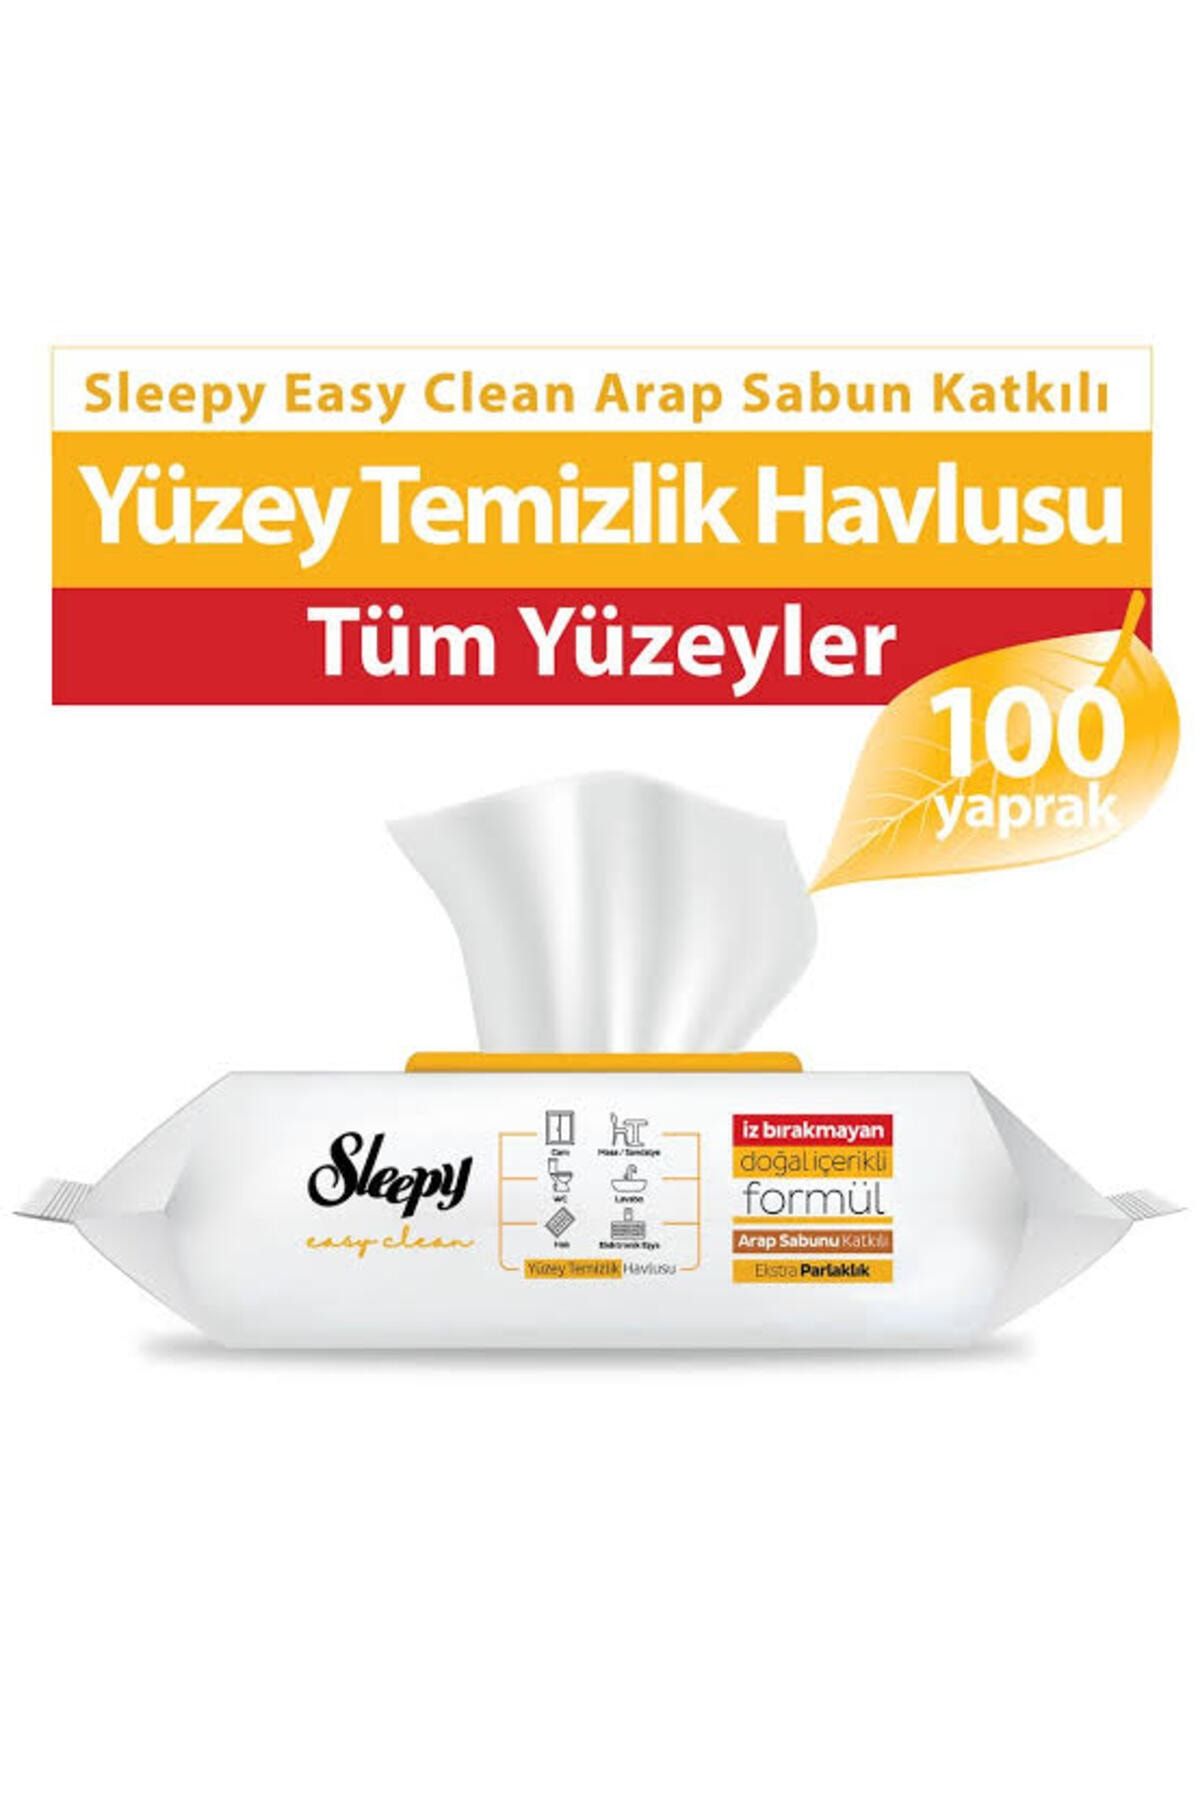 Sleepy Easy Clean Yüzey Temizlik Havlusu 100 Adet